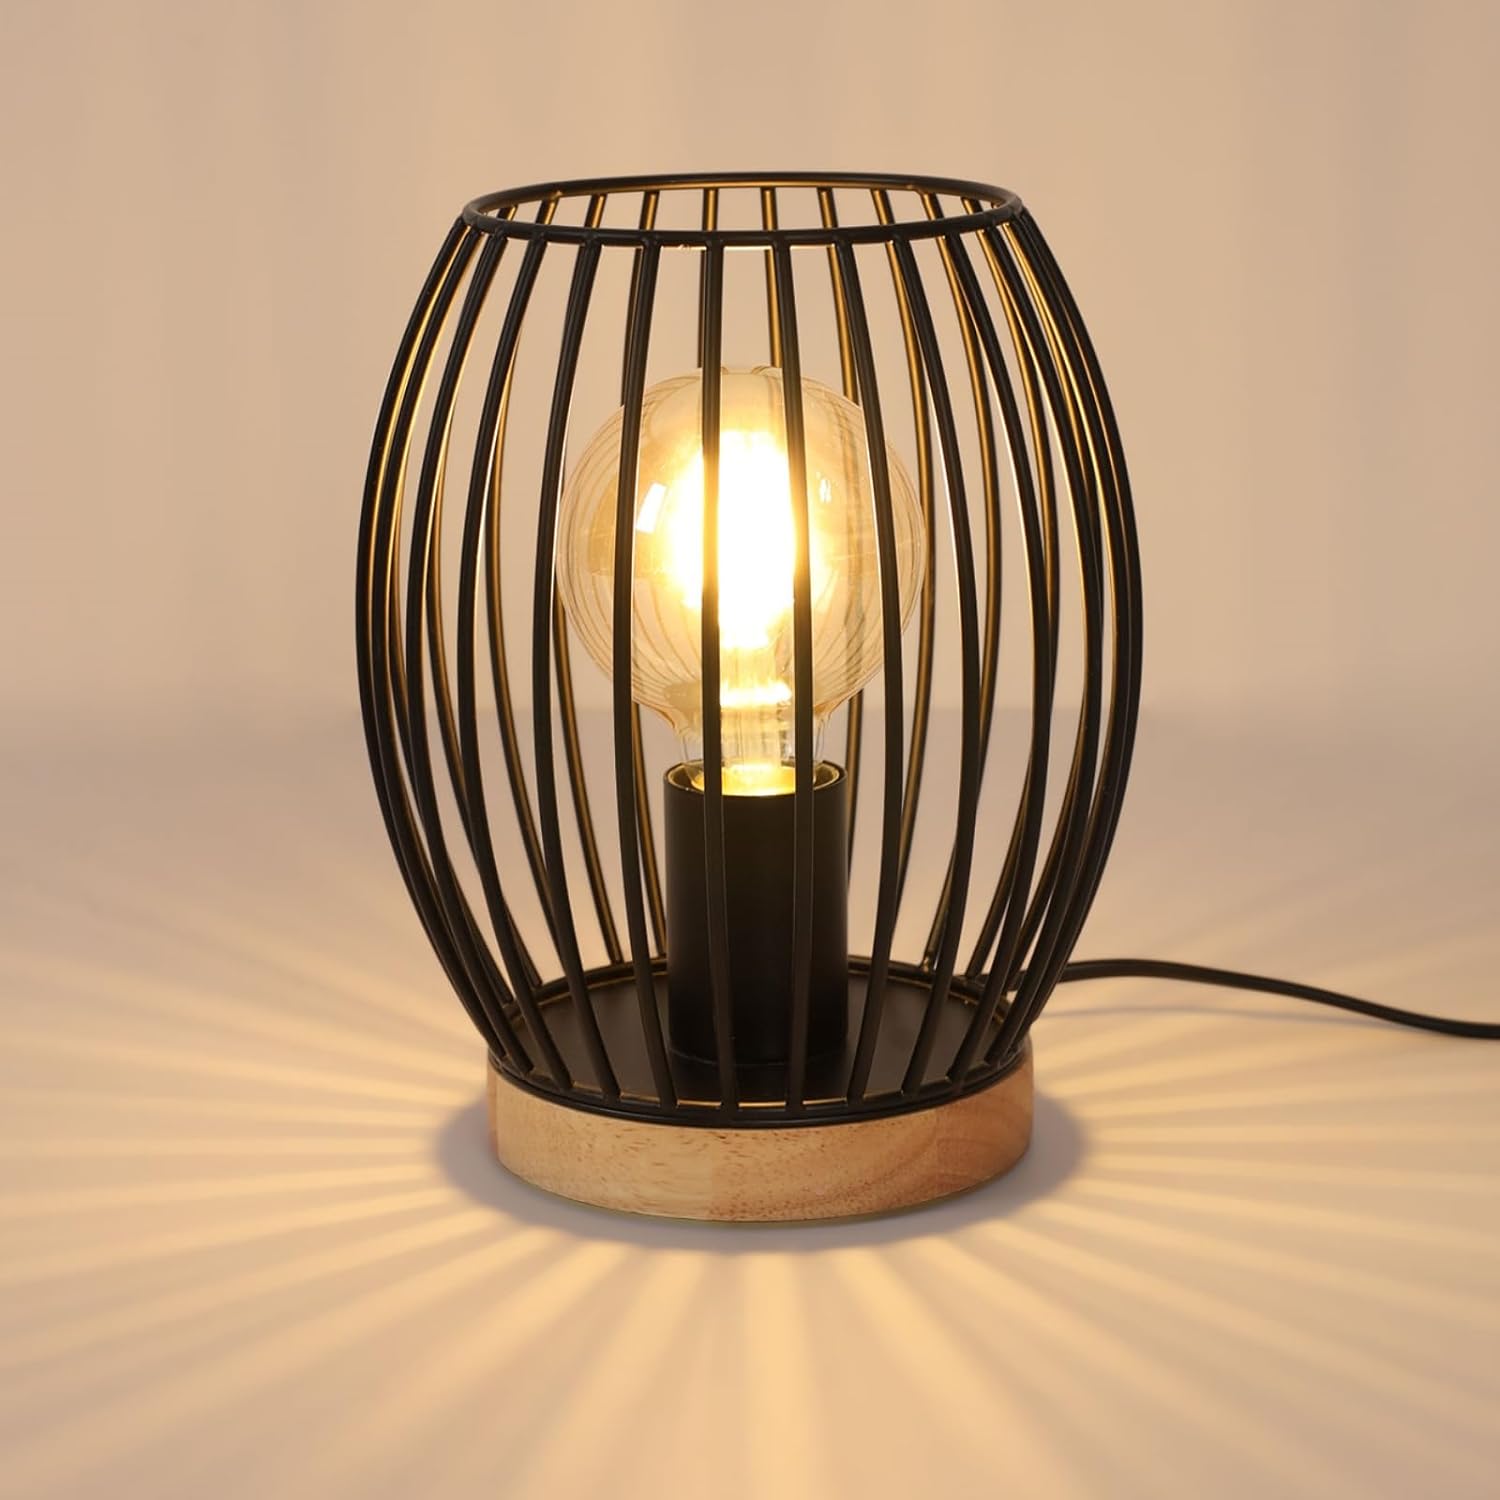 Lampe de table / chevet Noir